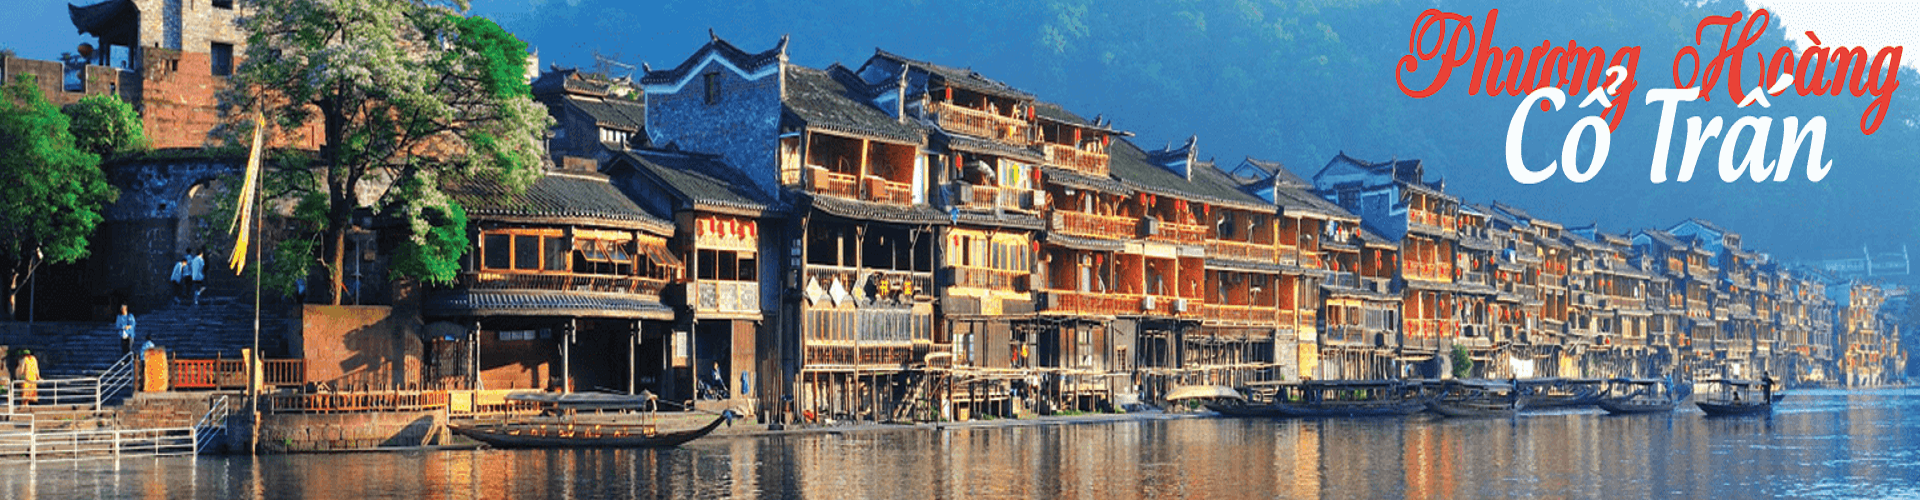 Tour Trương Gia Giới -Thiên Tử Sơn – Phượng Hoàng Cổ Trấn – Hồ Bảo Phong